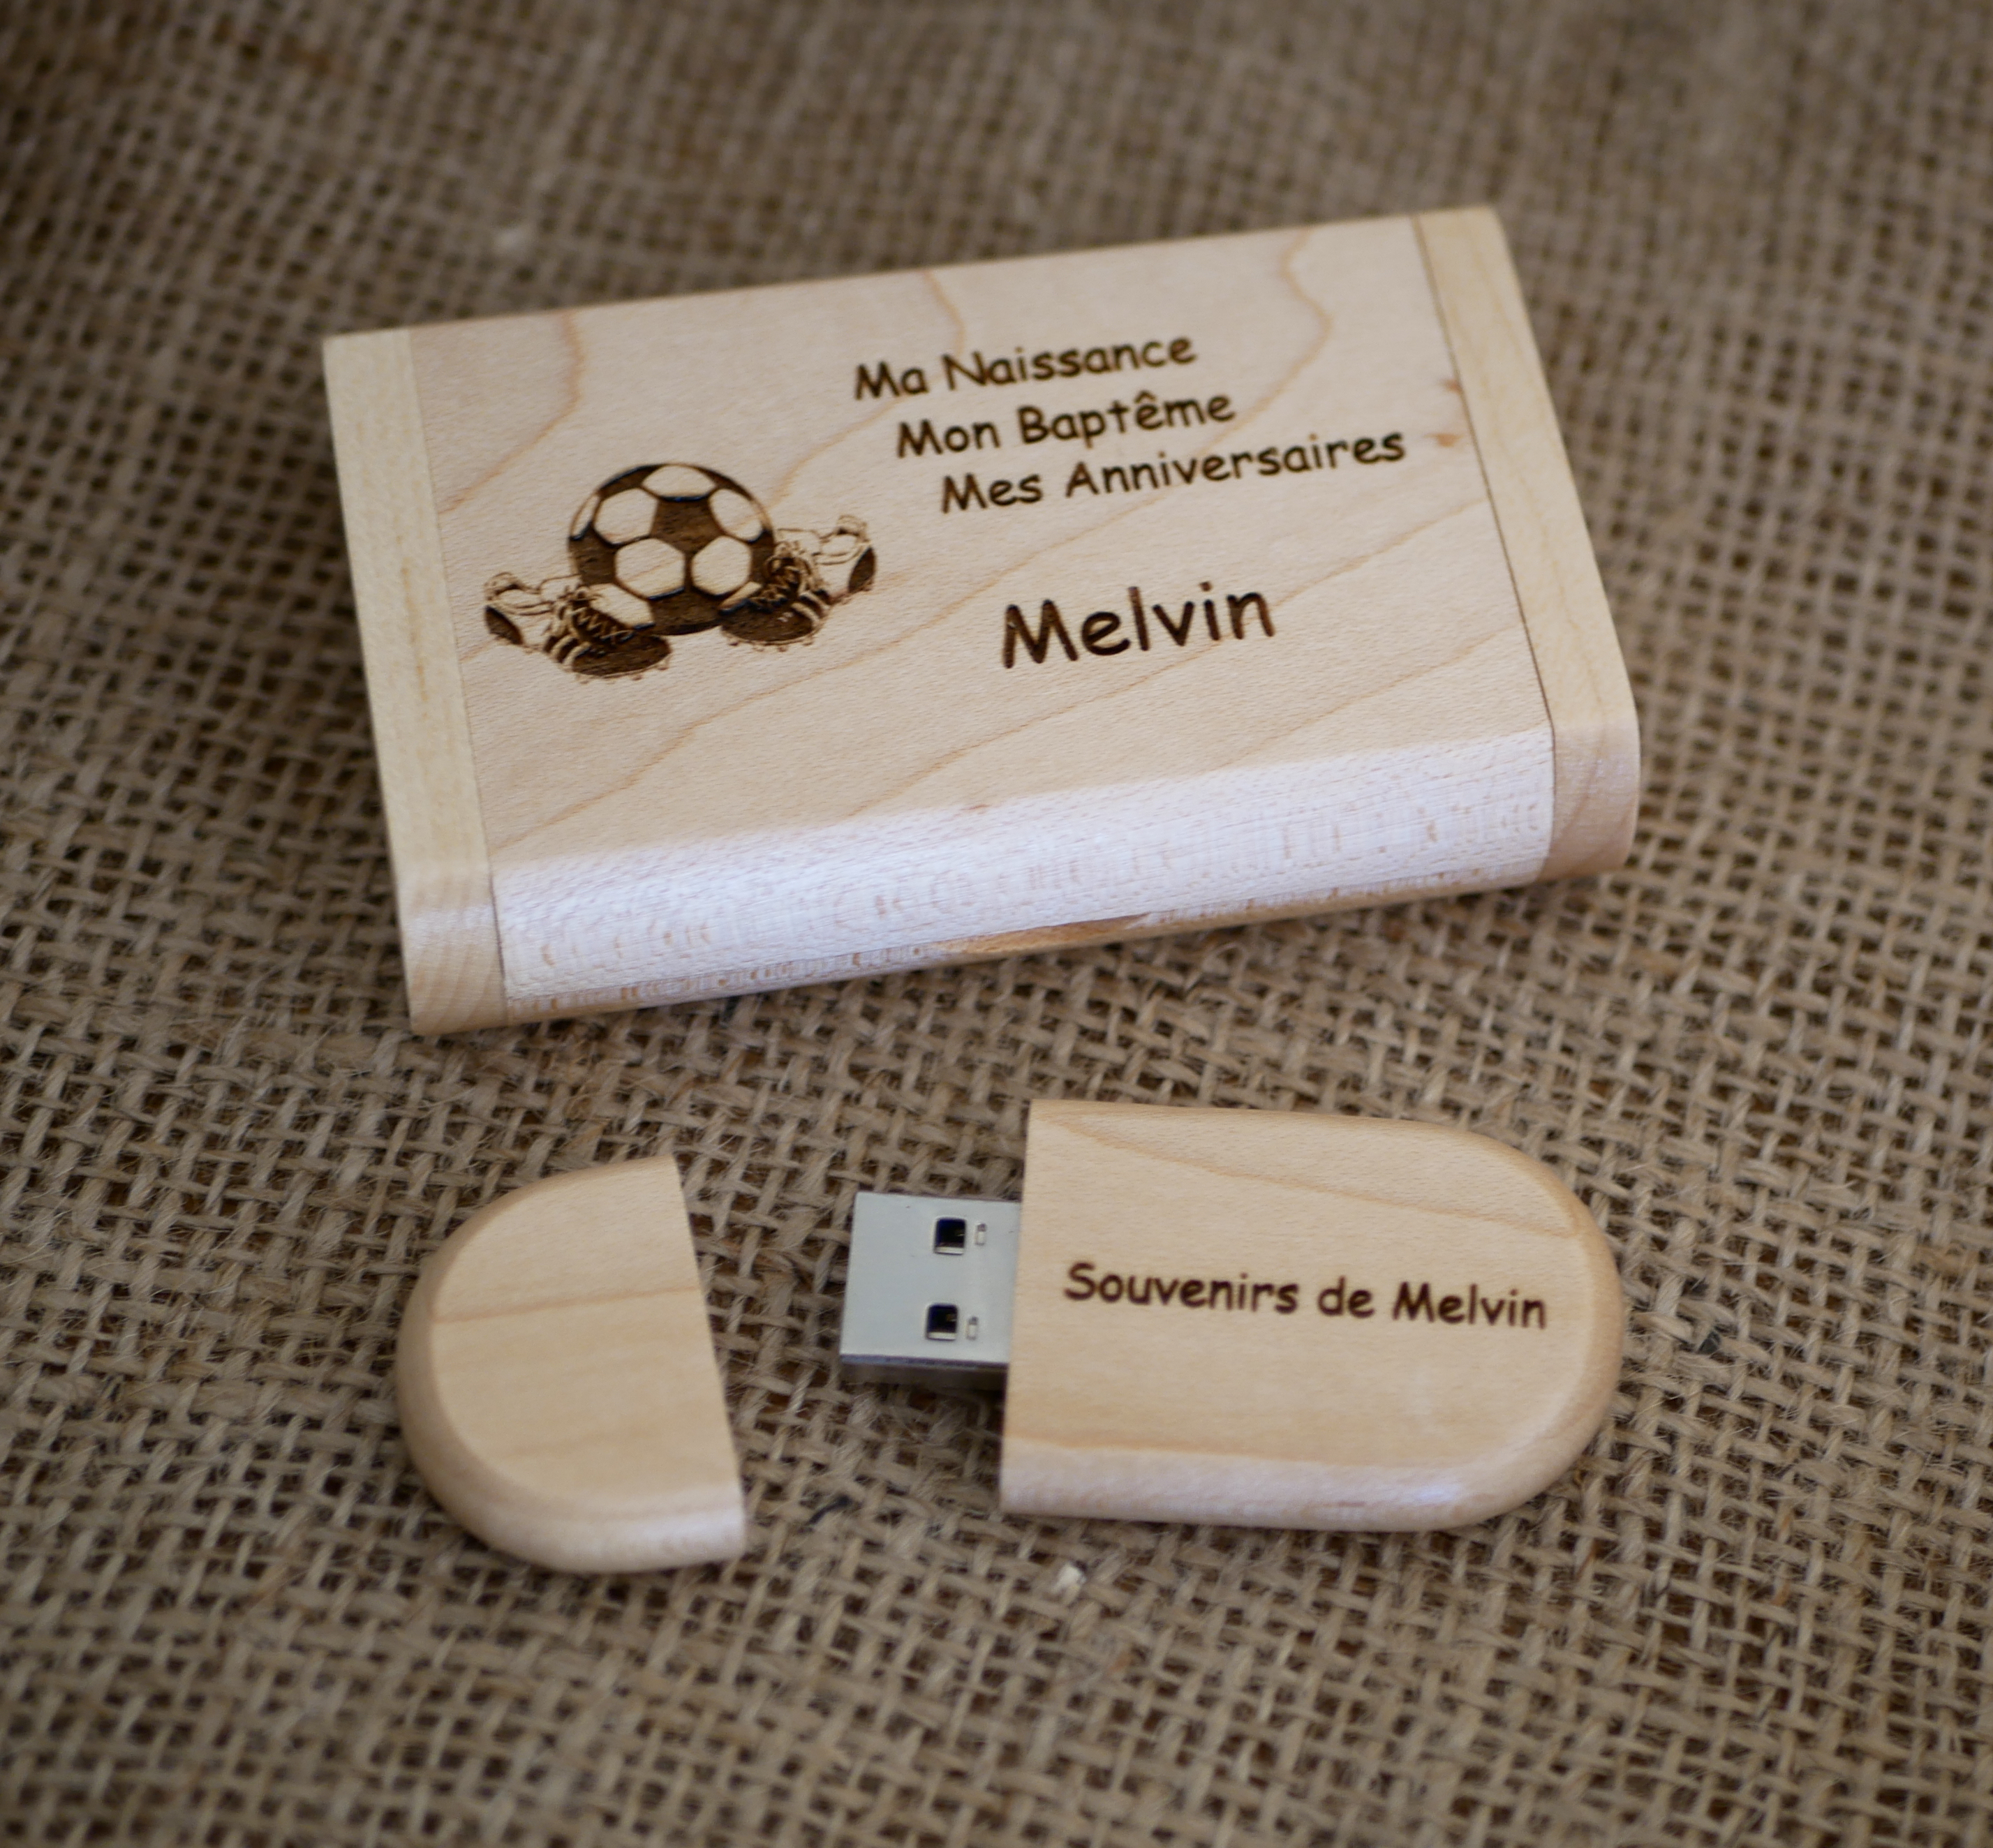 Gravur auf einem USB-Stick aus Ahornholz